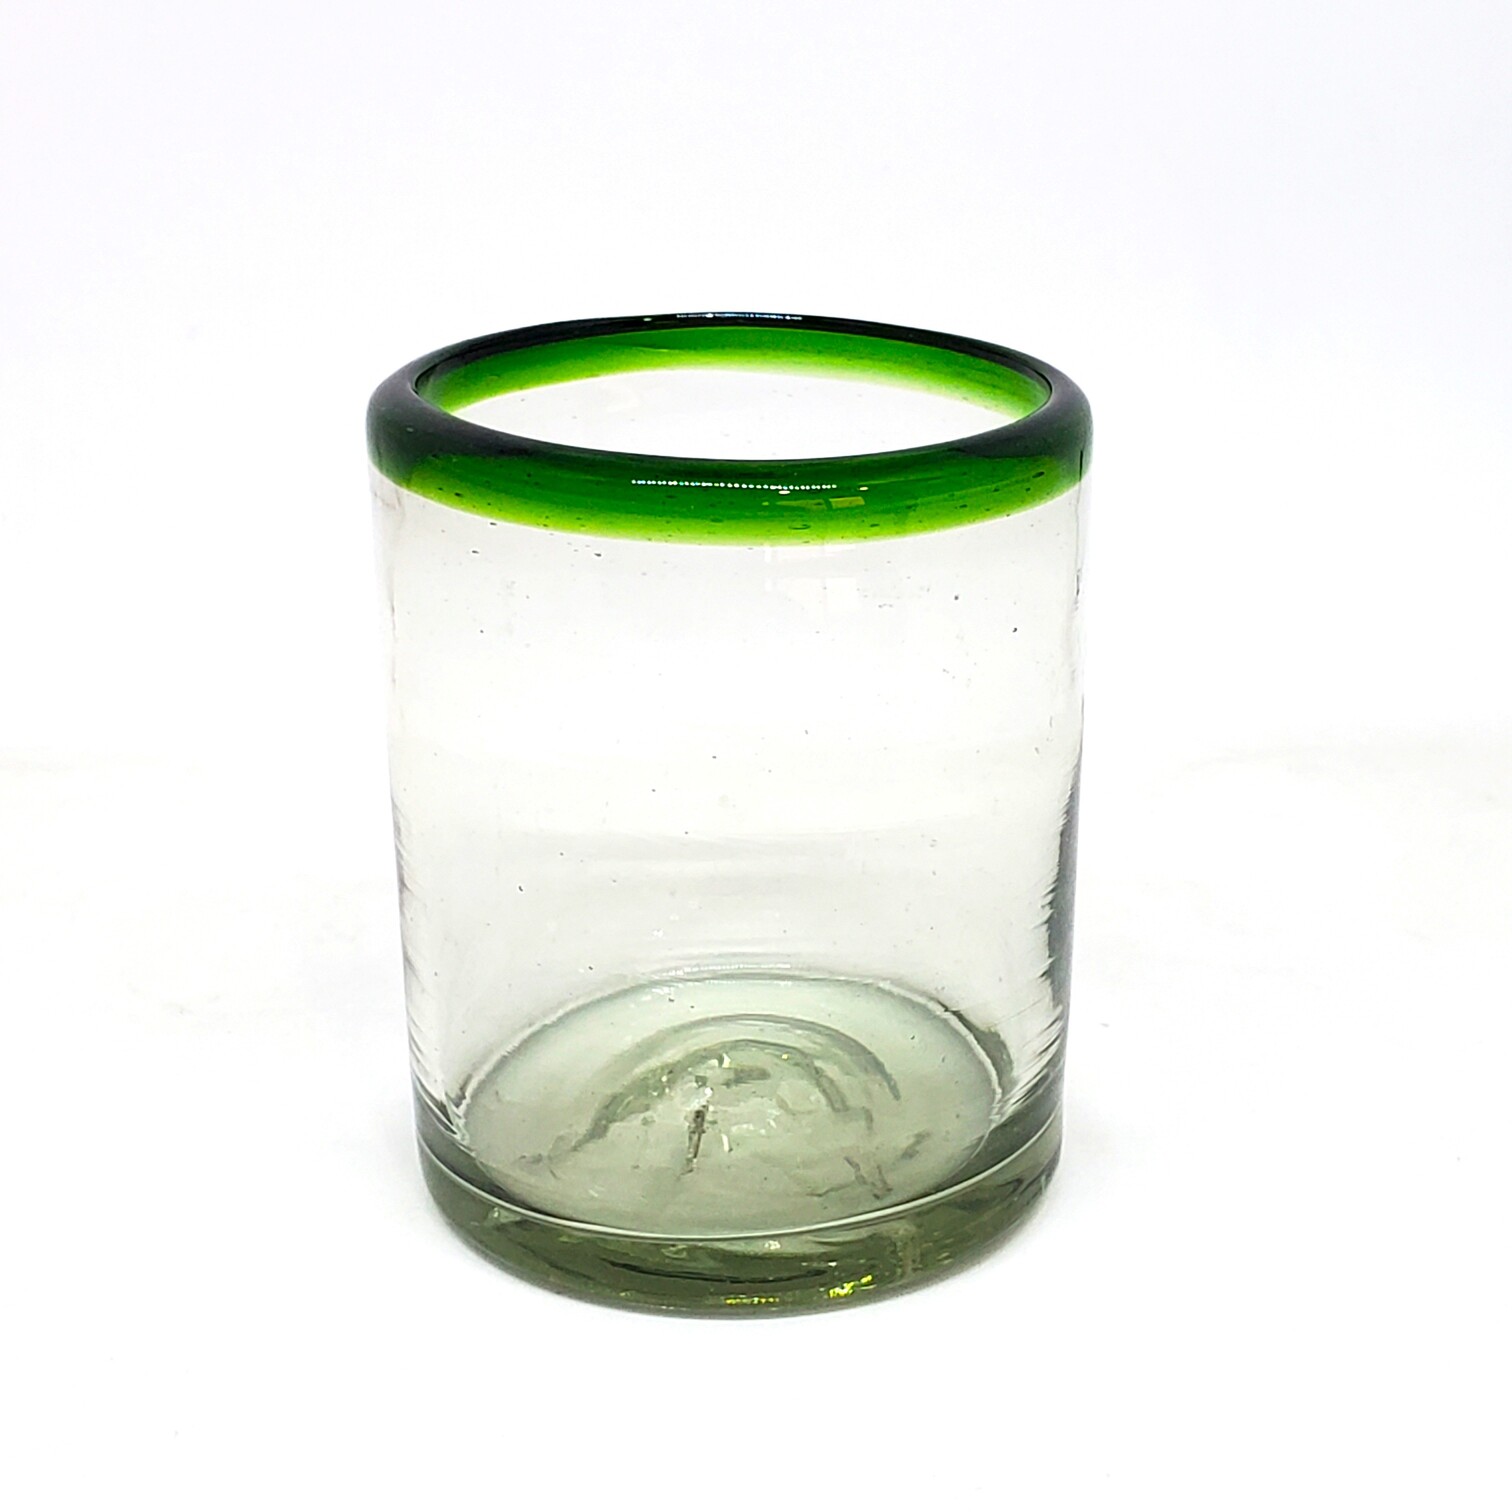 VIDRIO SOPLADO / vasos chicos con borde verde esmeralda, 10 oz, Vidrio Reciclado, Libre de Plomo y Toxinas